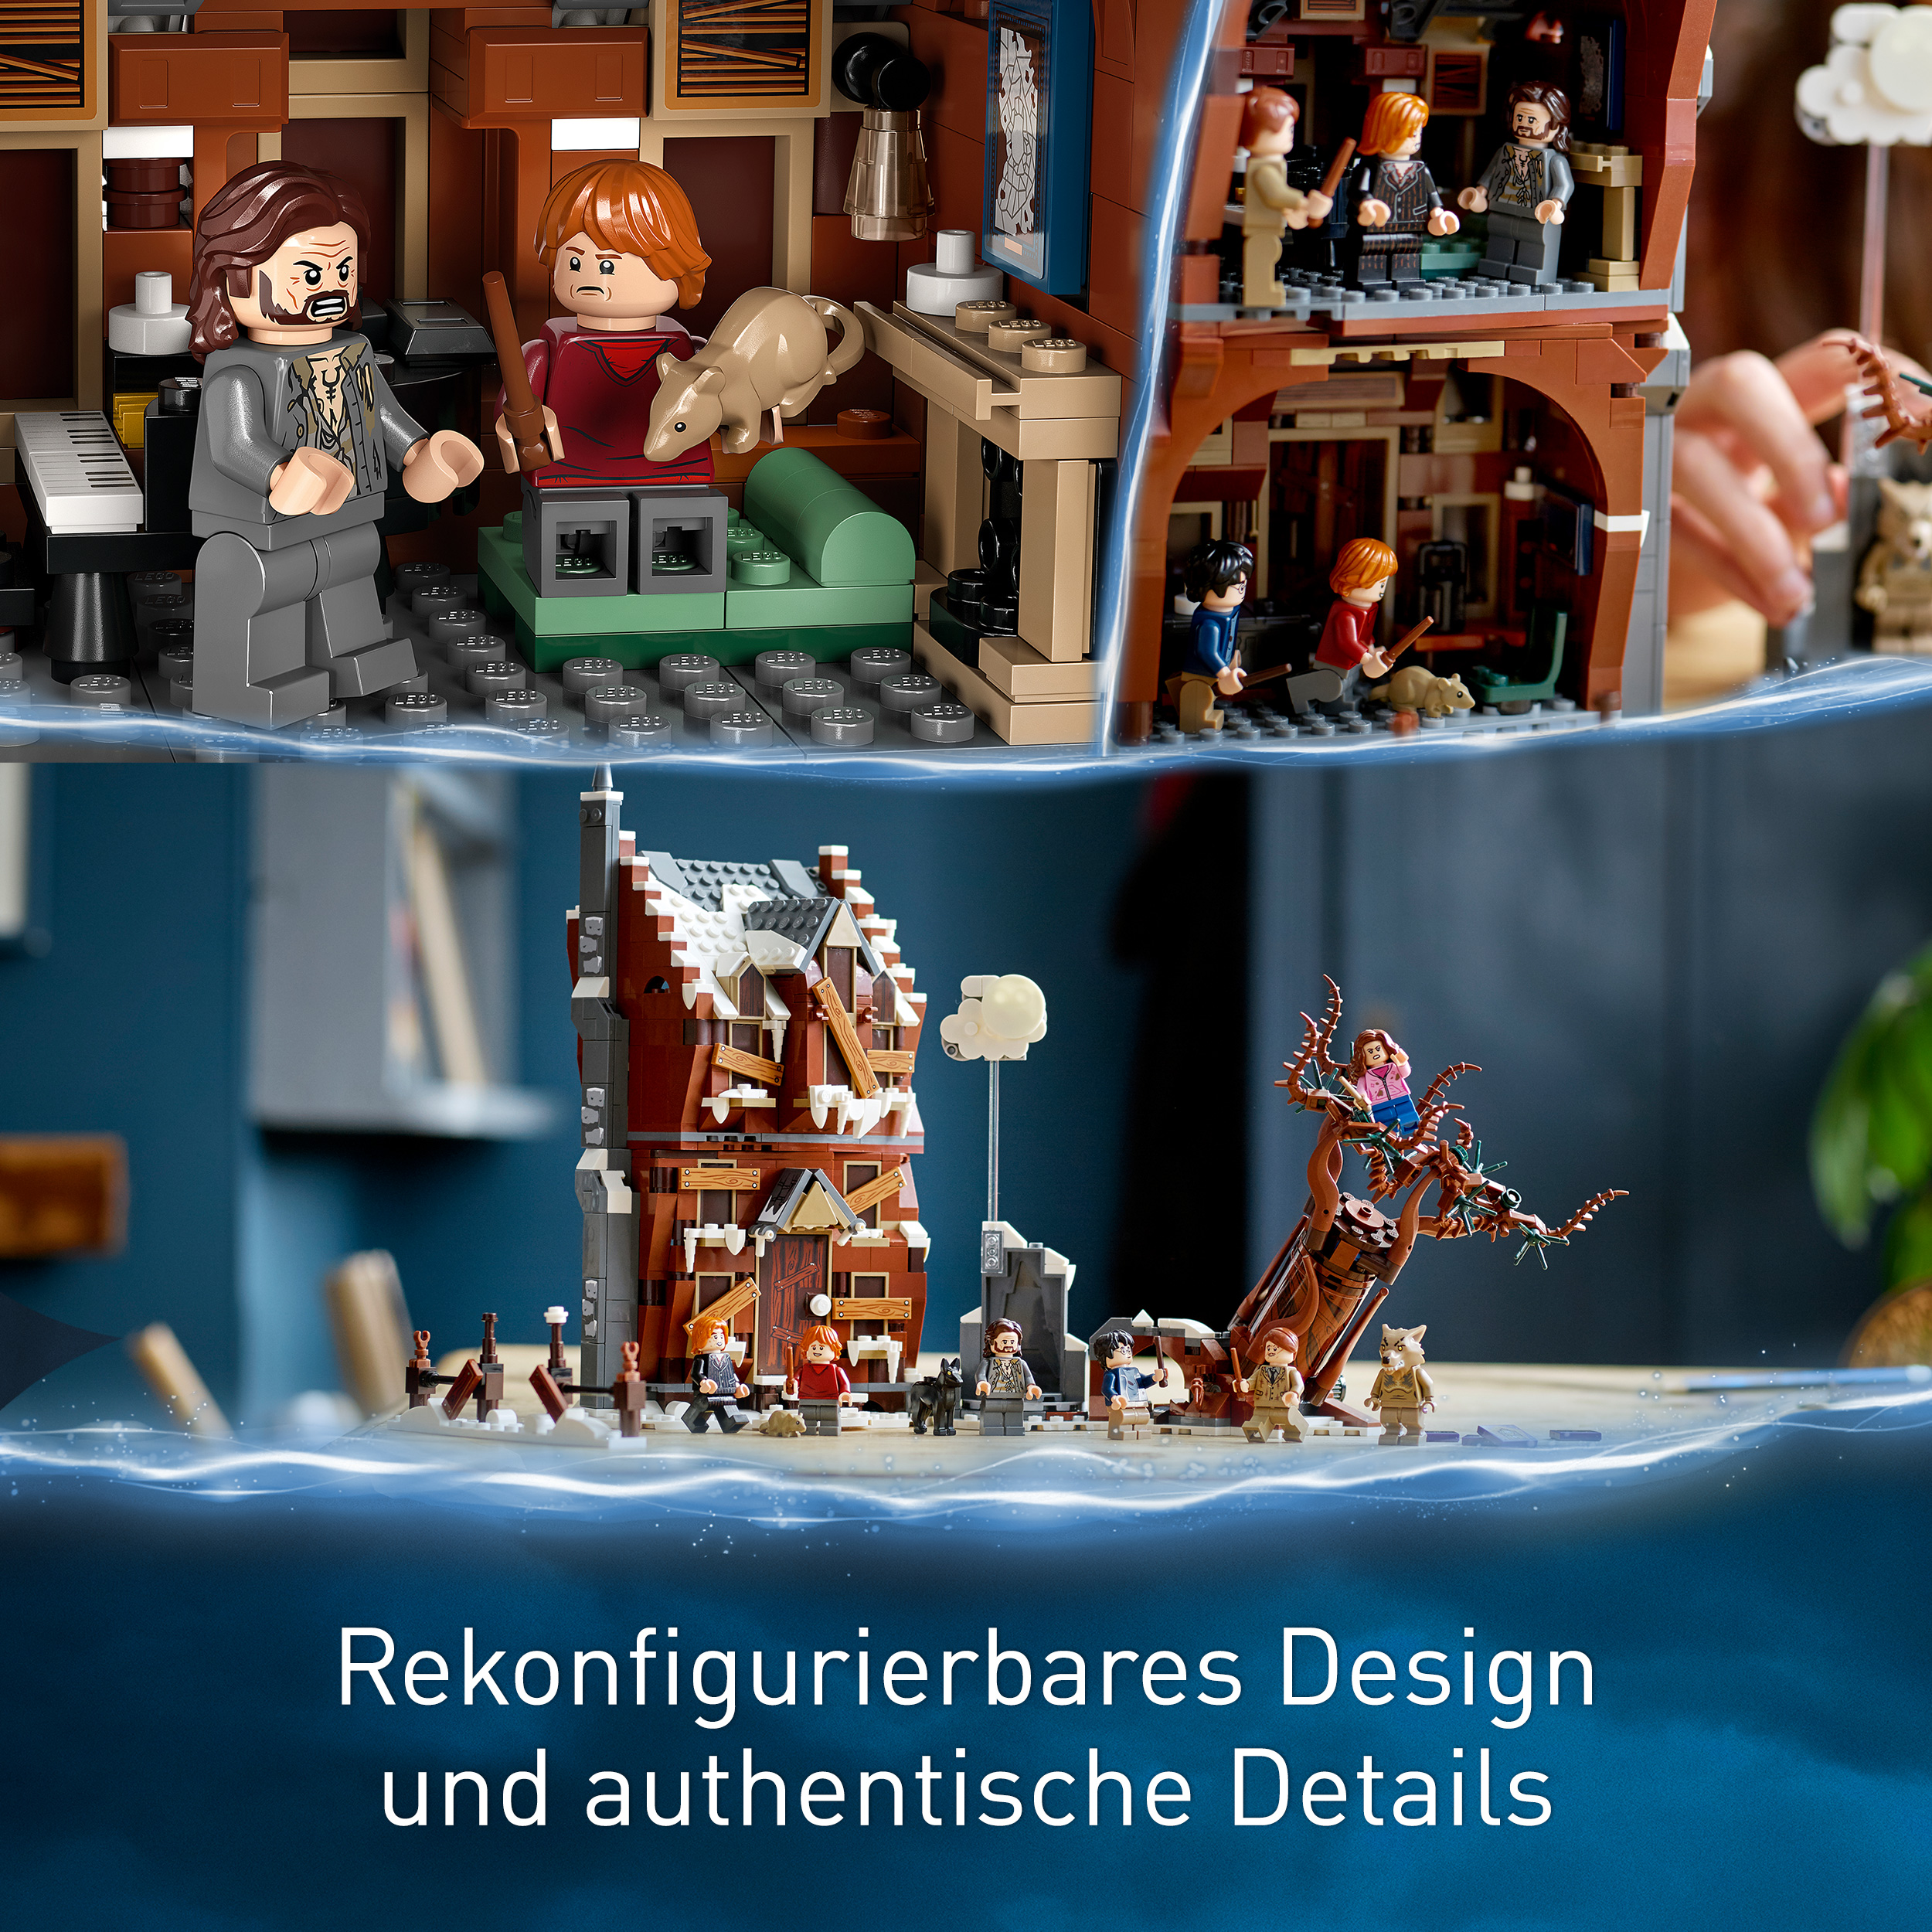 Mehrfarbig 76407 Heulende Harry Hütte LEGO Peitschende Potter und Weide Bausatz,